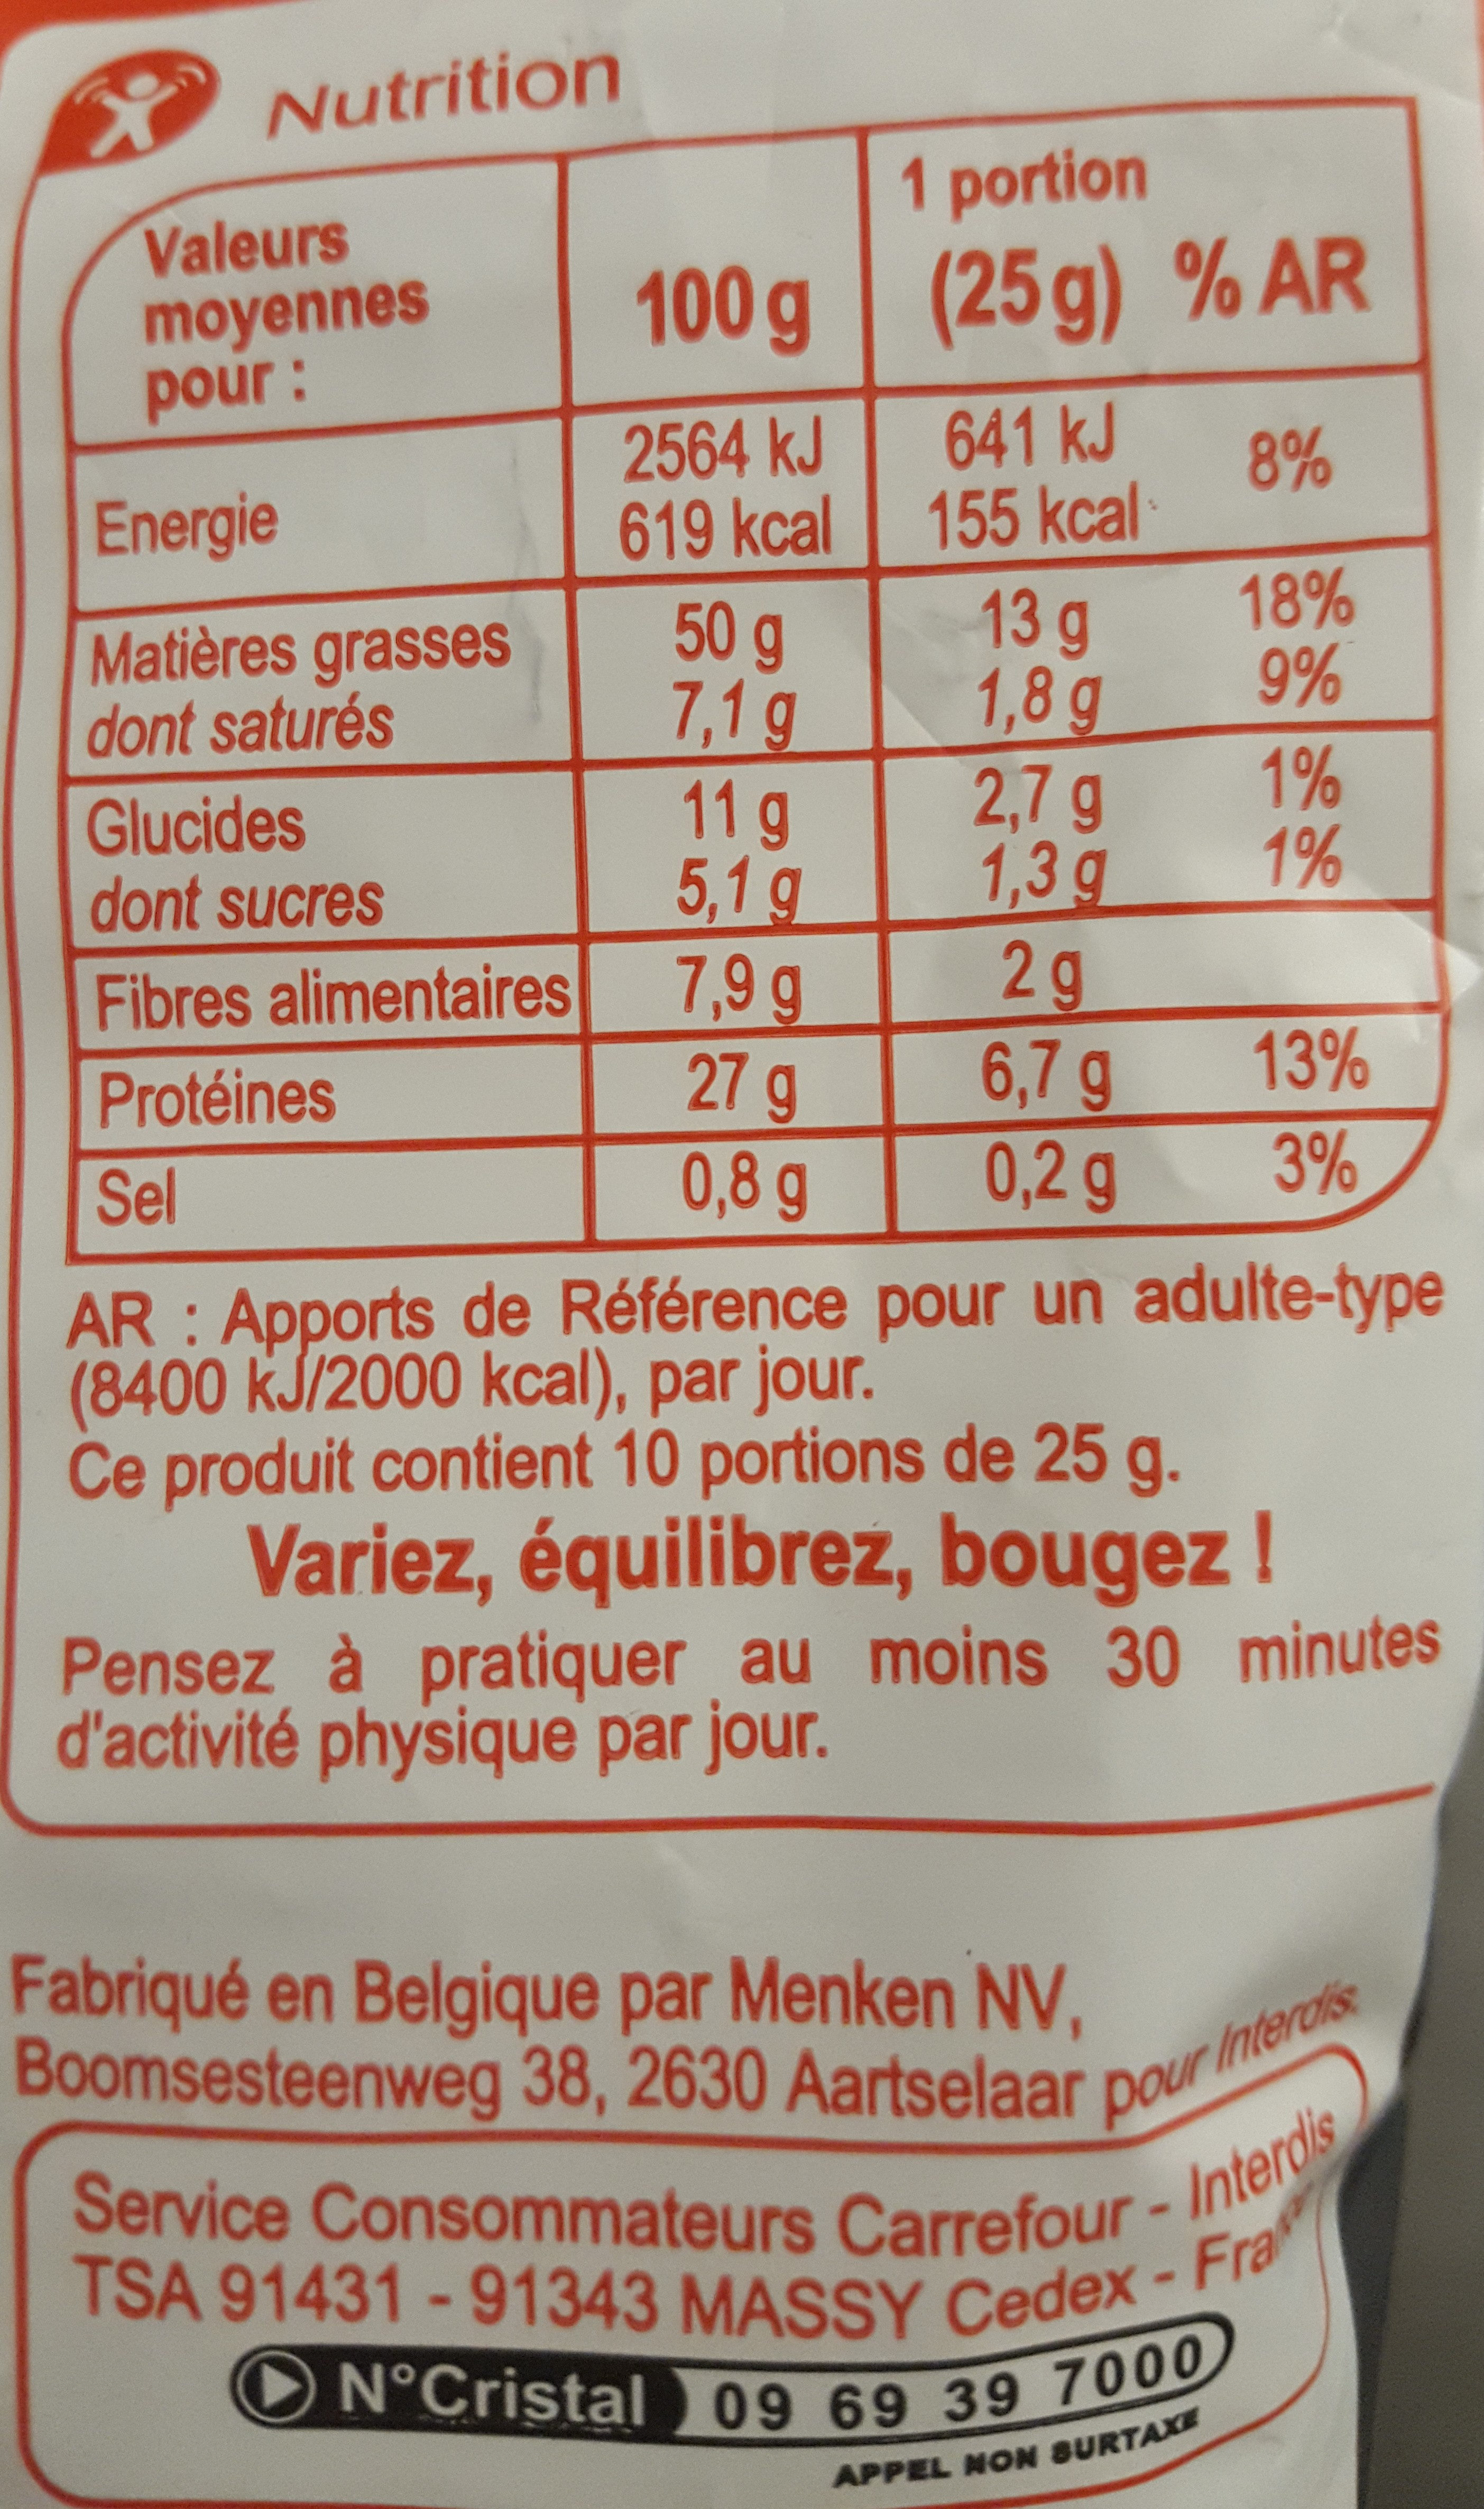 Cacahuètes - Informations nutritionnelles - fr